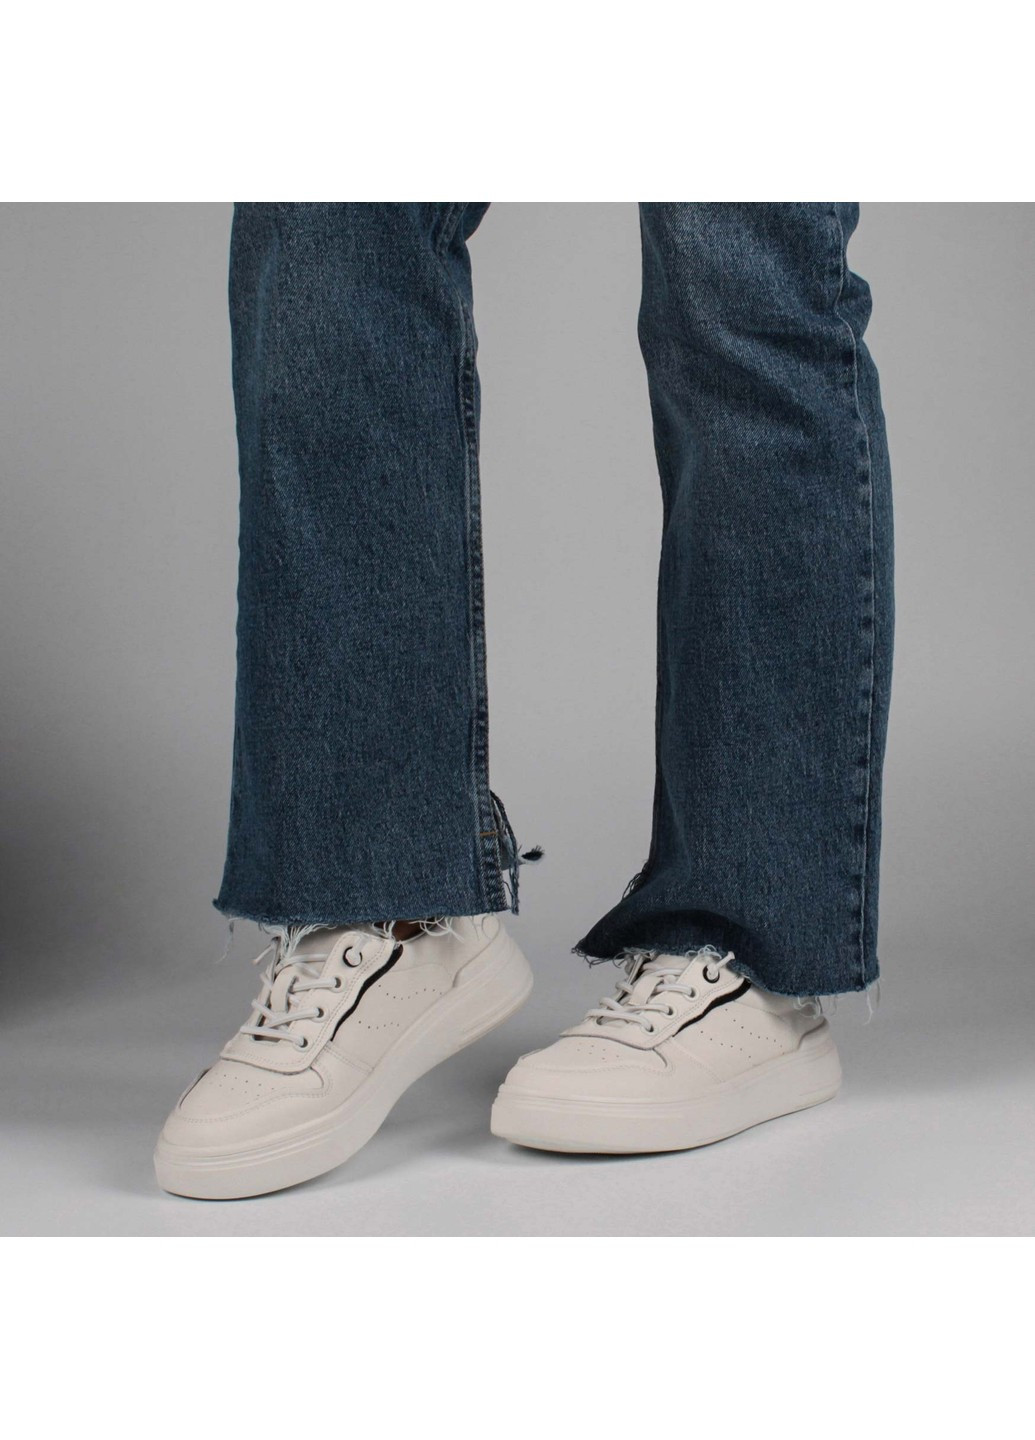 Білі осінні жіночі кросівки 198941 Buts